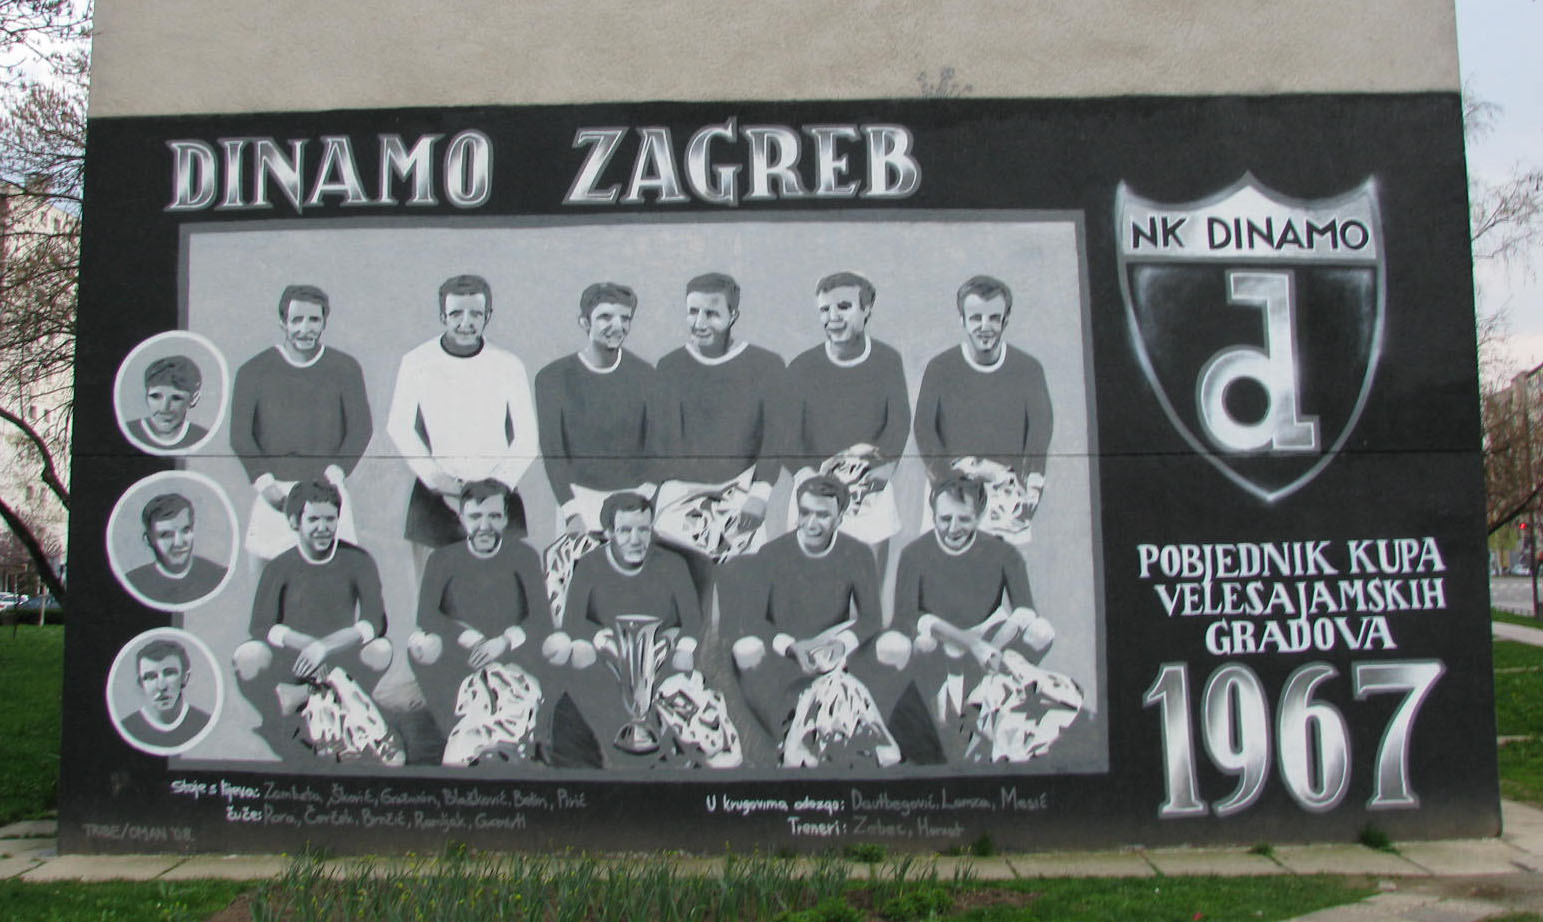 Dinamo Zagreb celebrates 110th birthday